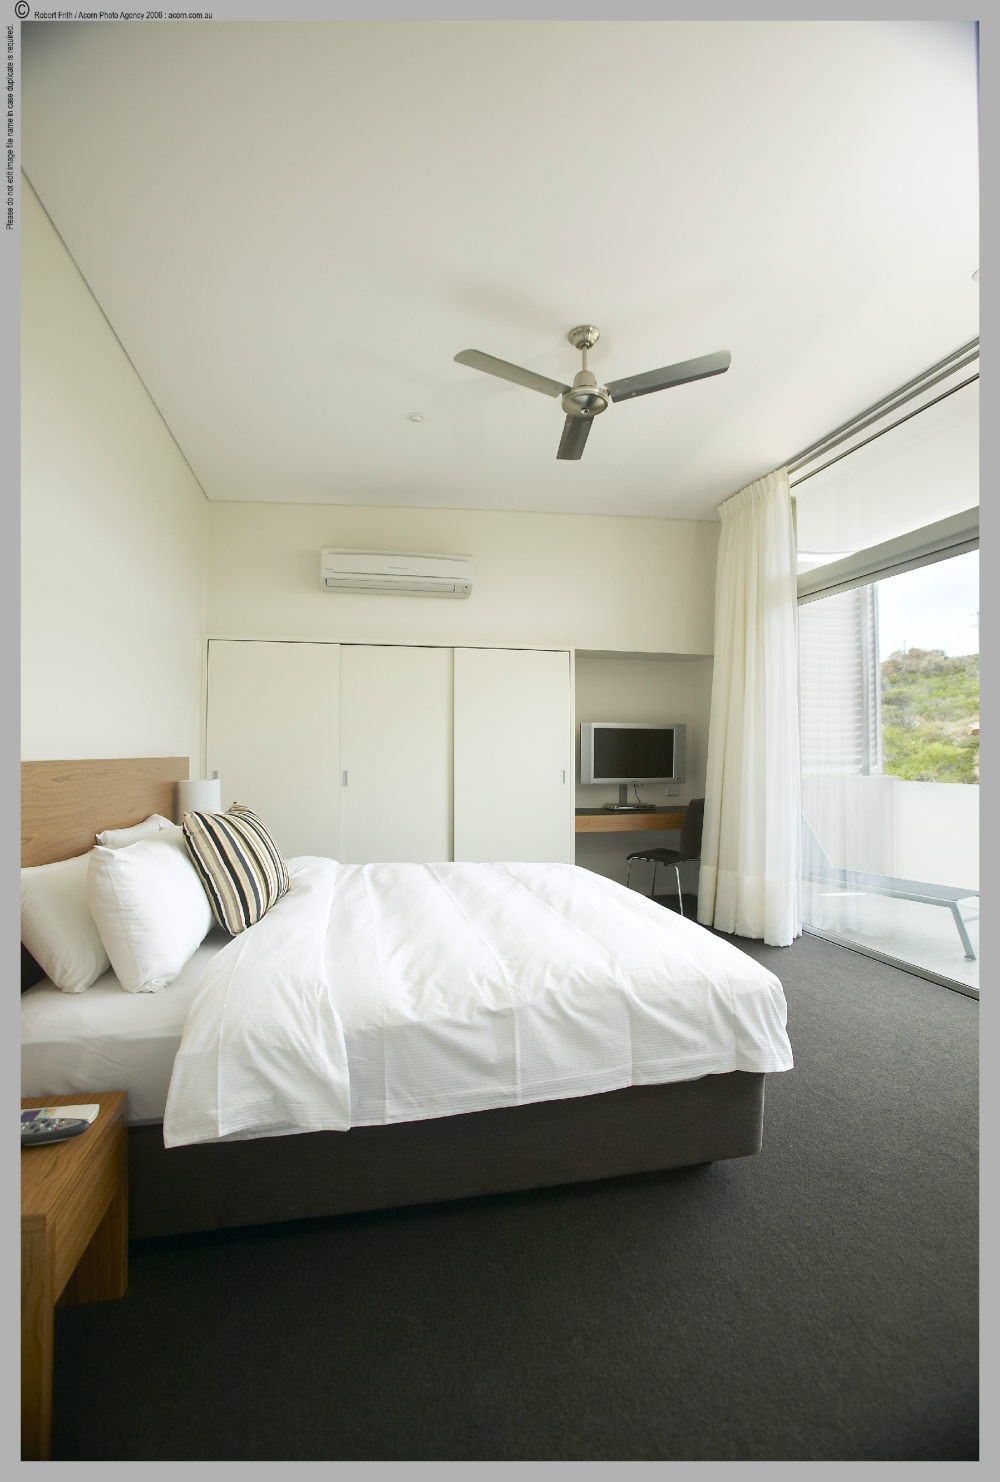 澳大利亚斯密斯海灘度假酒店 Smiths Beach Resort_27997103-H1-Villas Mater bedroom.JPG